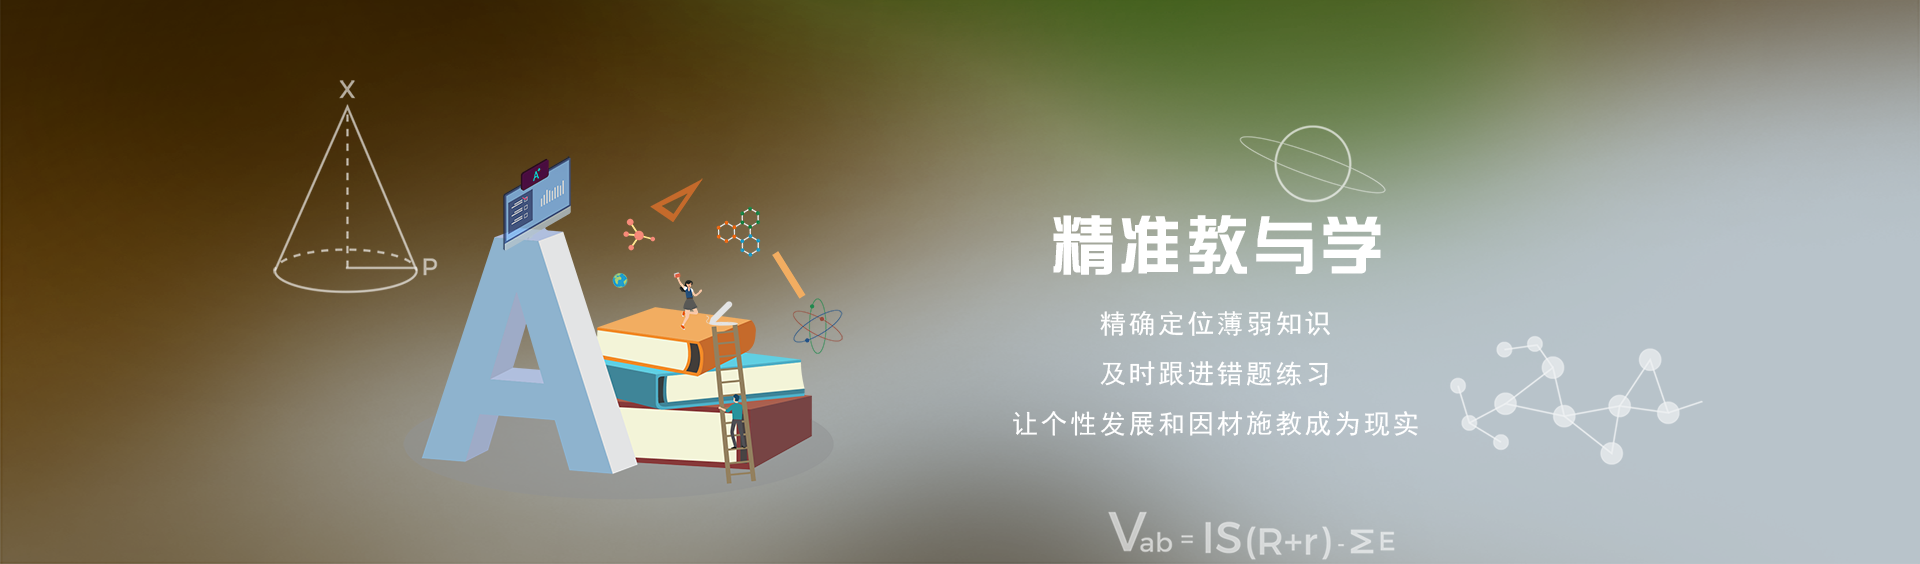 关于当前产品4066全球玩家信心之选·(中国)官方网站的成功案例等相关图片